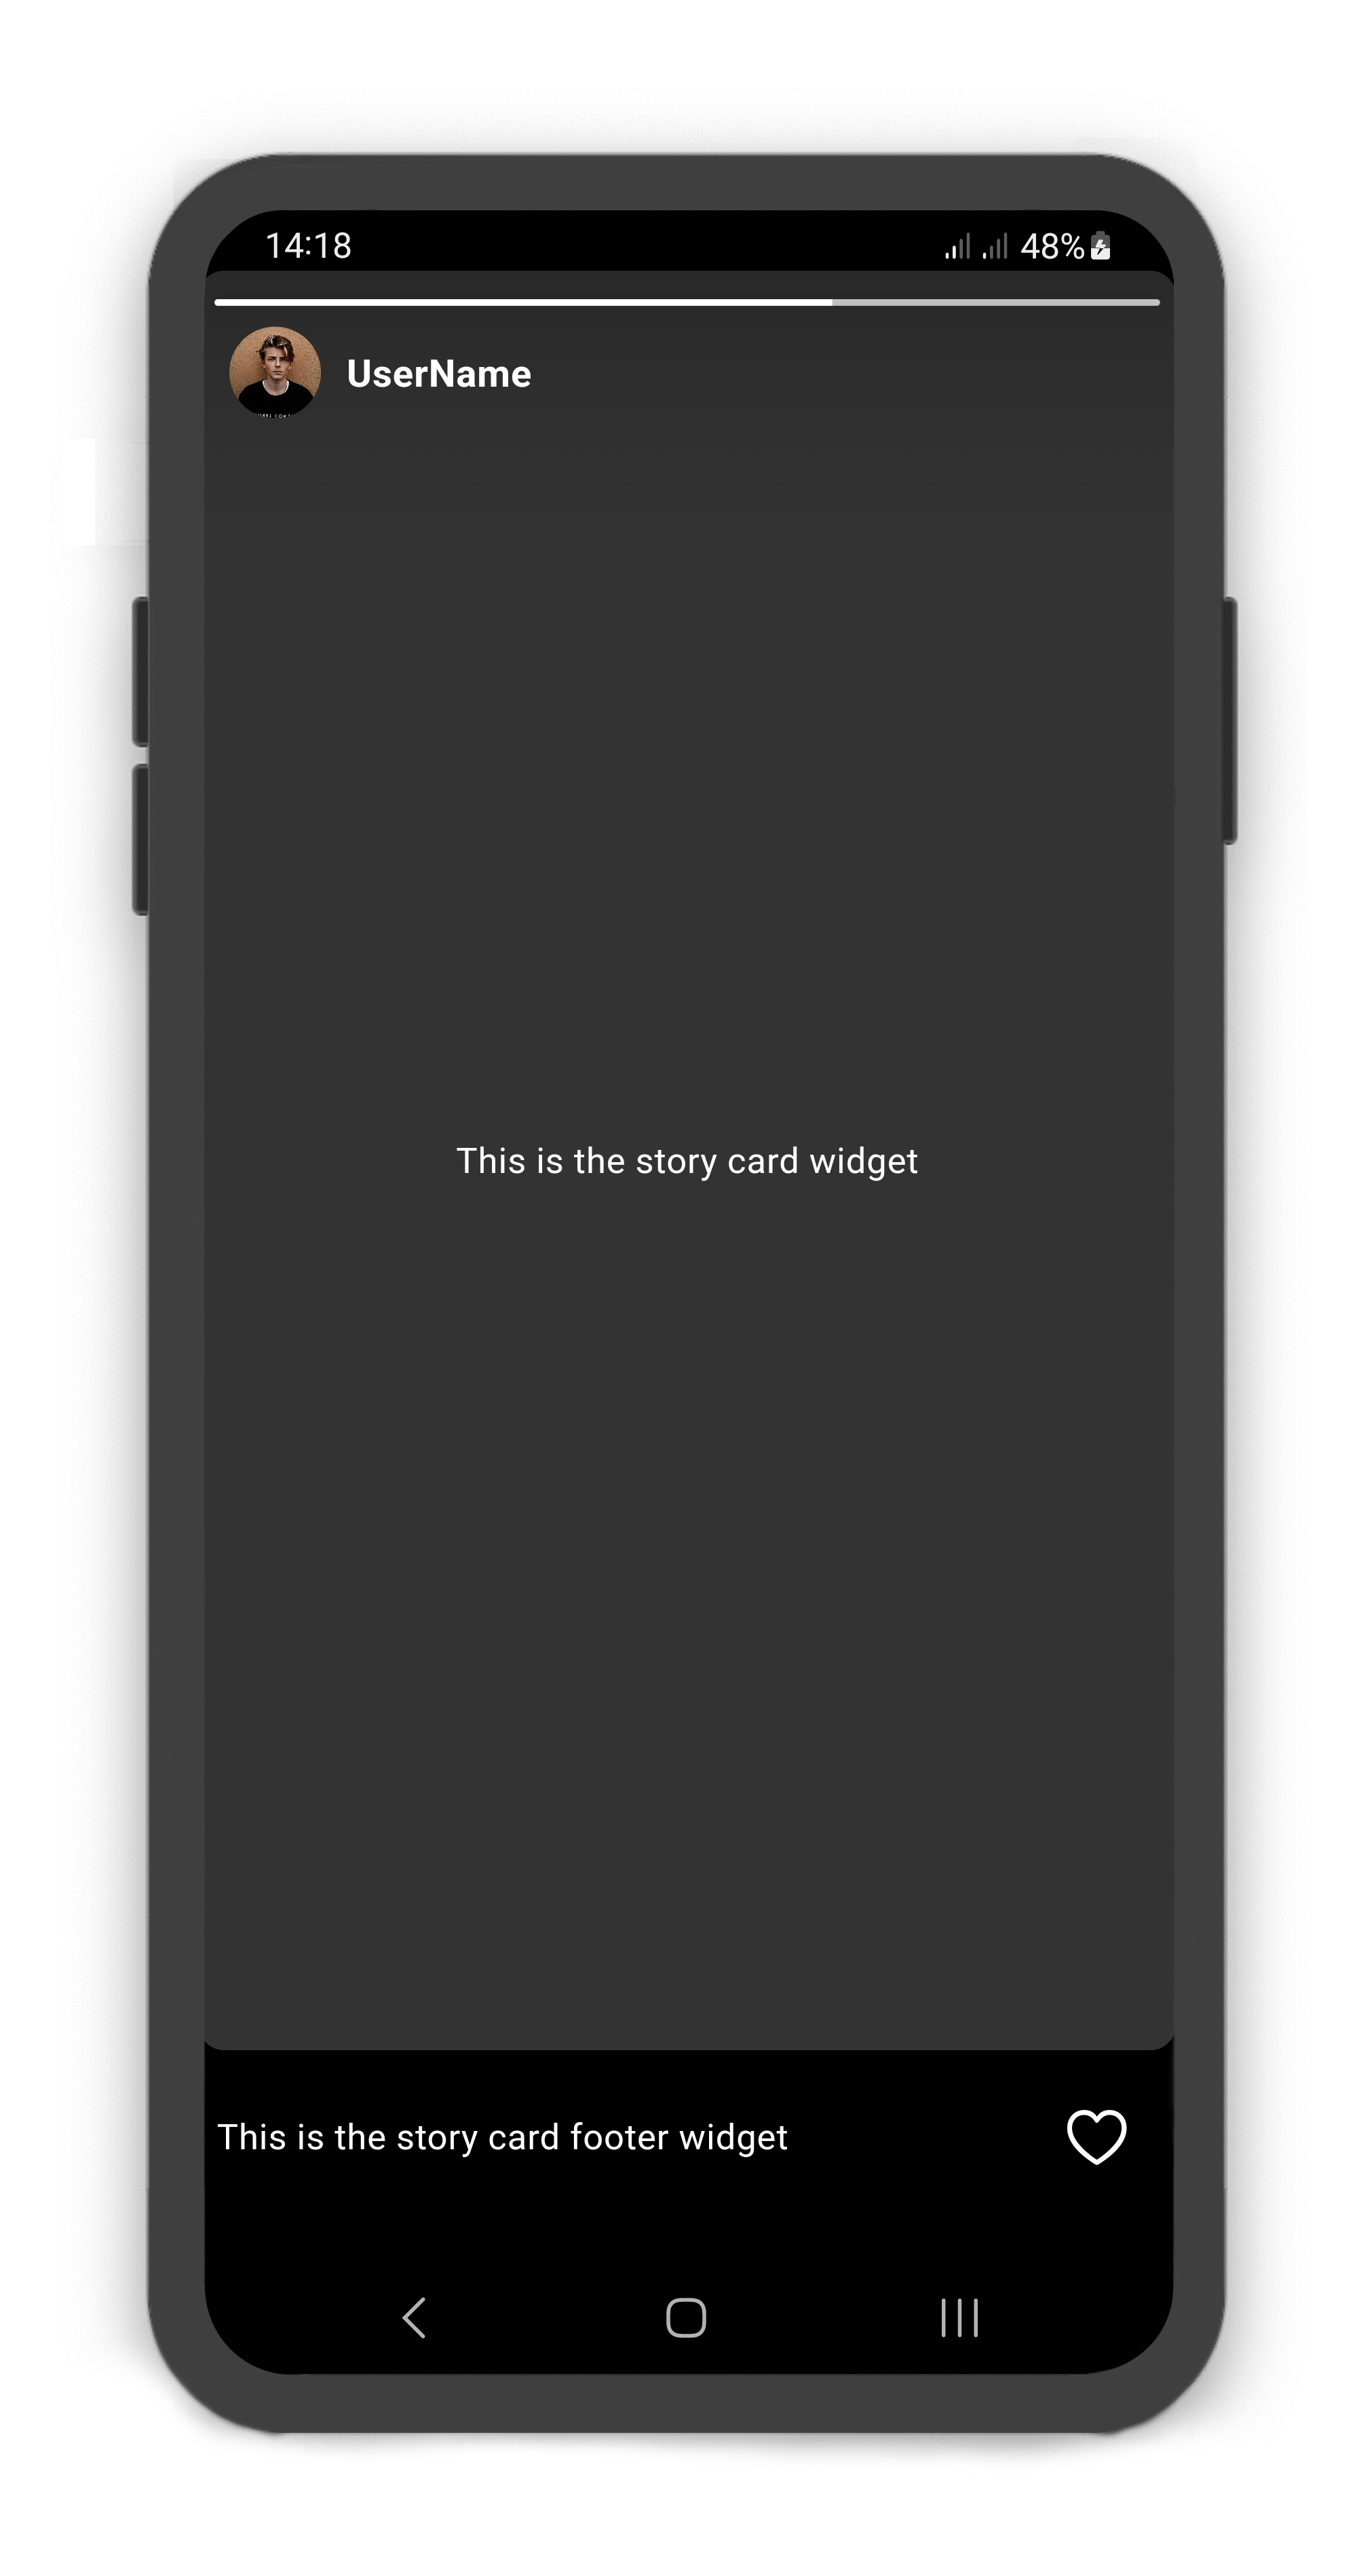 StoryCardLikeButton